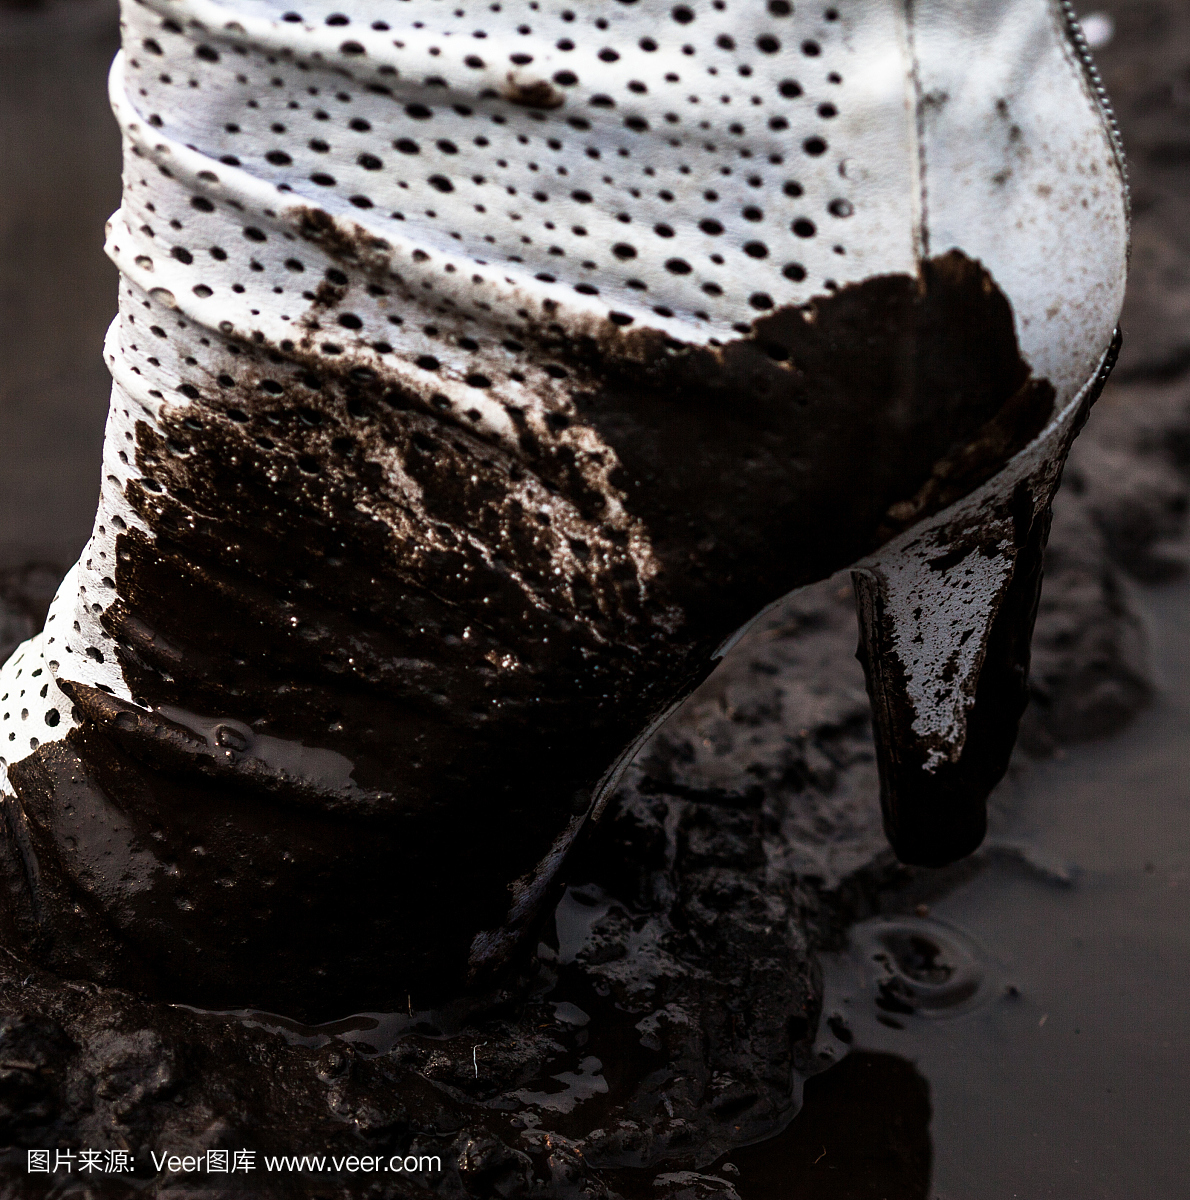 肮脏的白色高跟鞋在泥里